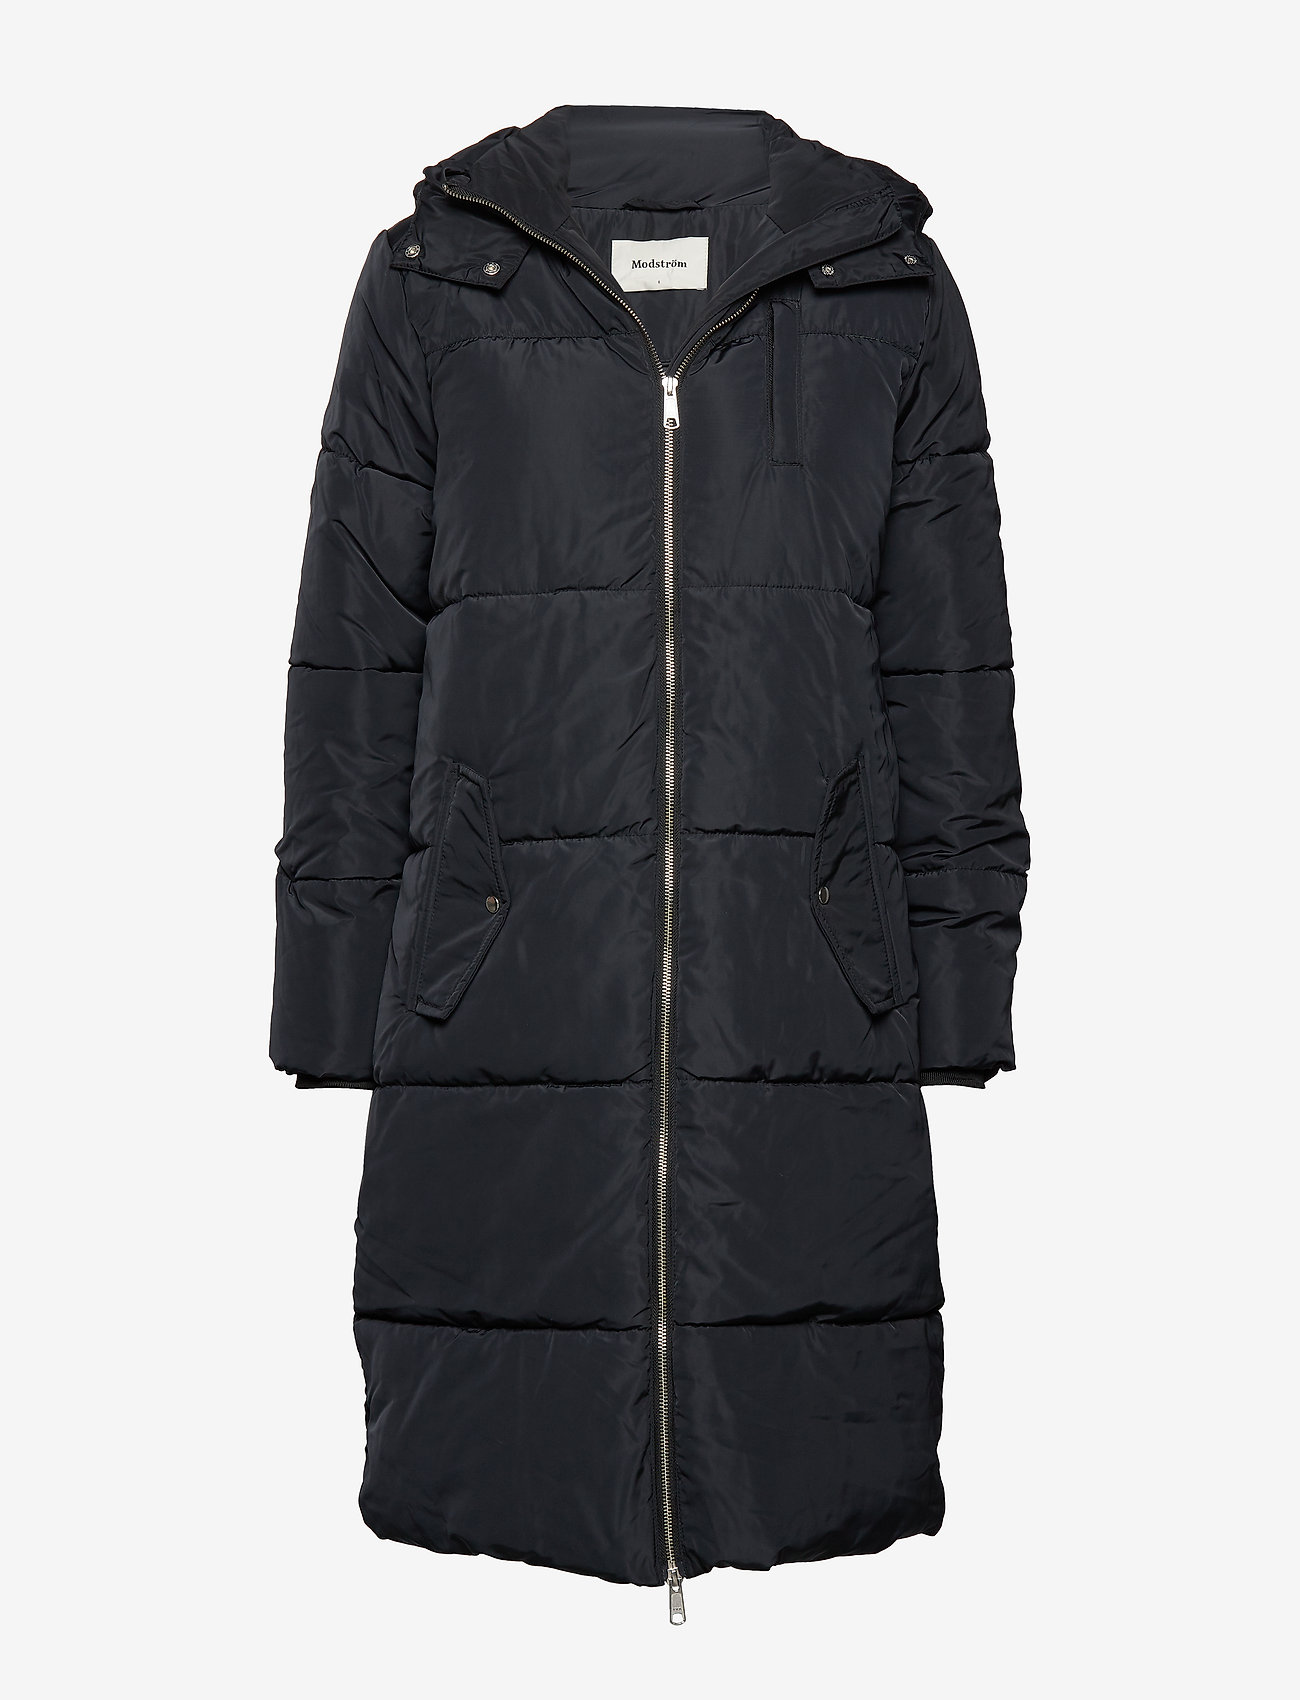 Modström - Phoebe jacket - vinterfrakker - black - 0